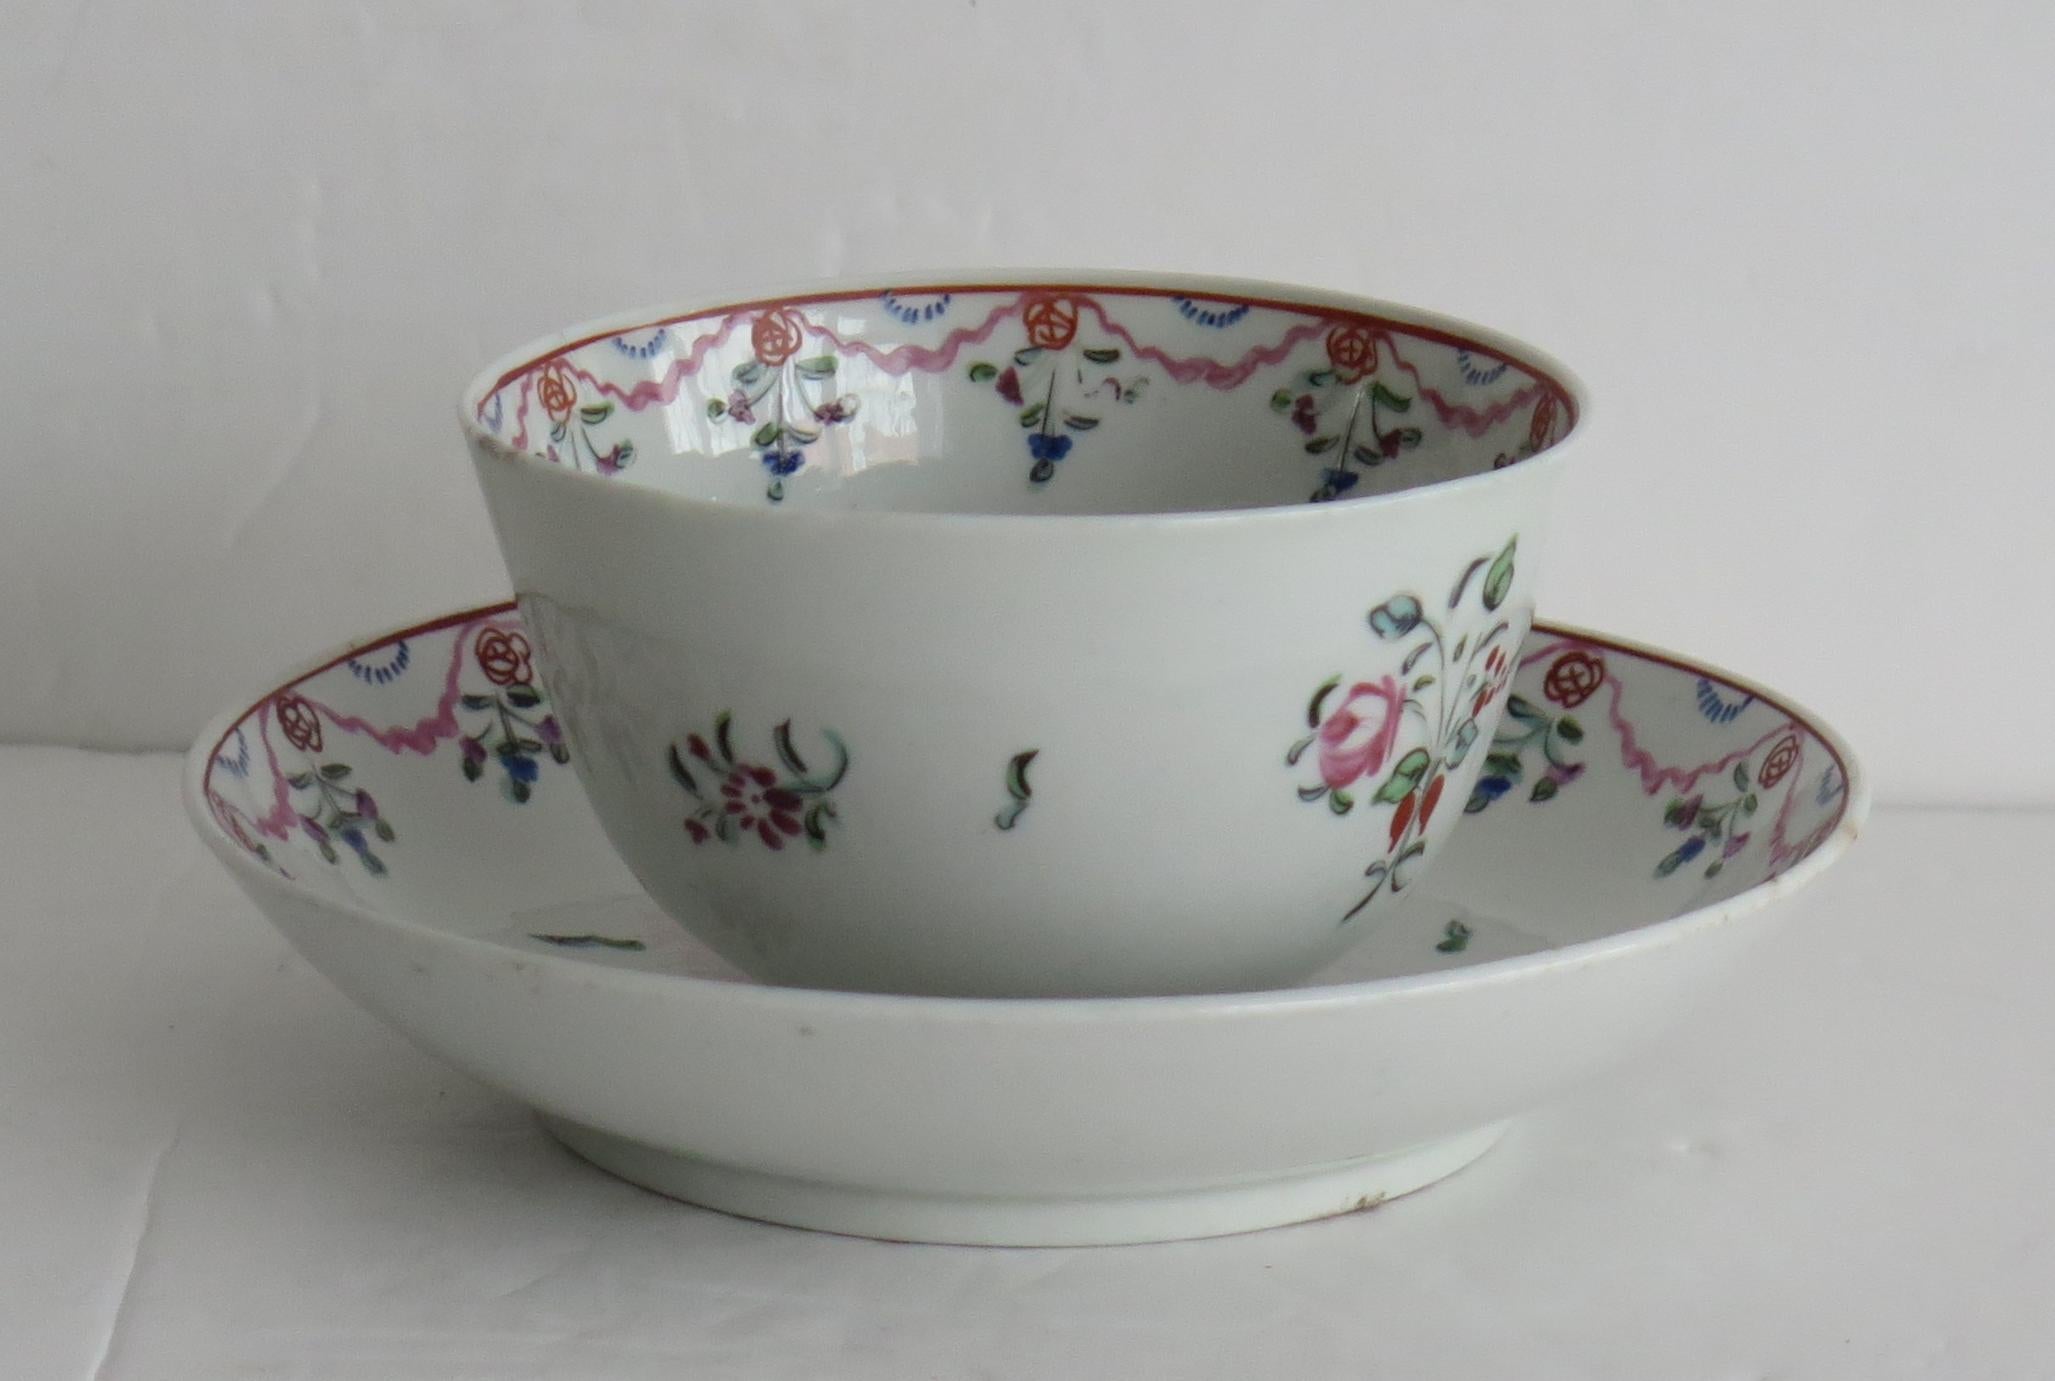 Il s'agit d'un bol à thé et d'une soucoupe en porcelaine à pâte dure de New Hall, datant du début du 18e siècle, période George 111, vers 1800.

Les deux pièces sont décorées sur glaçure avec un motif Chantilly français peint à la main, montrant